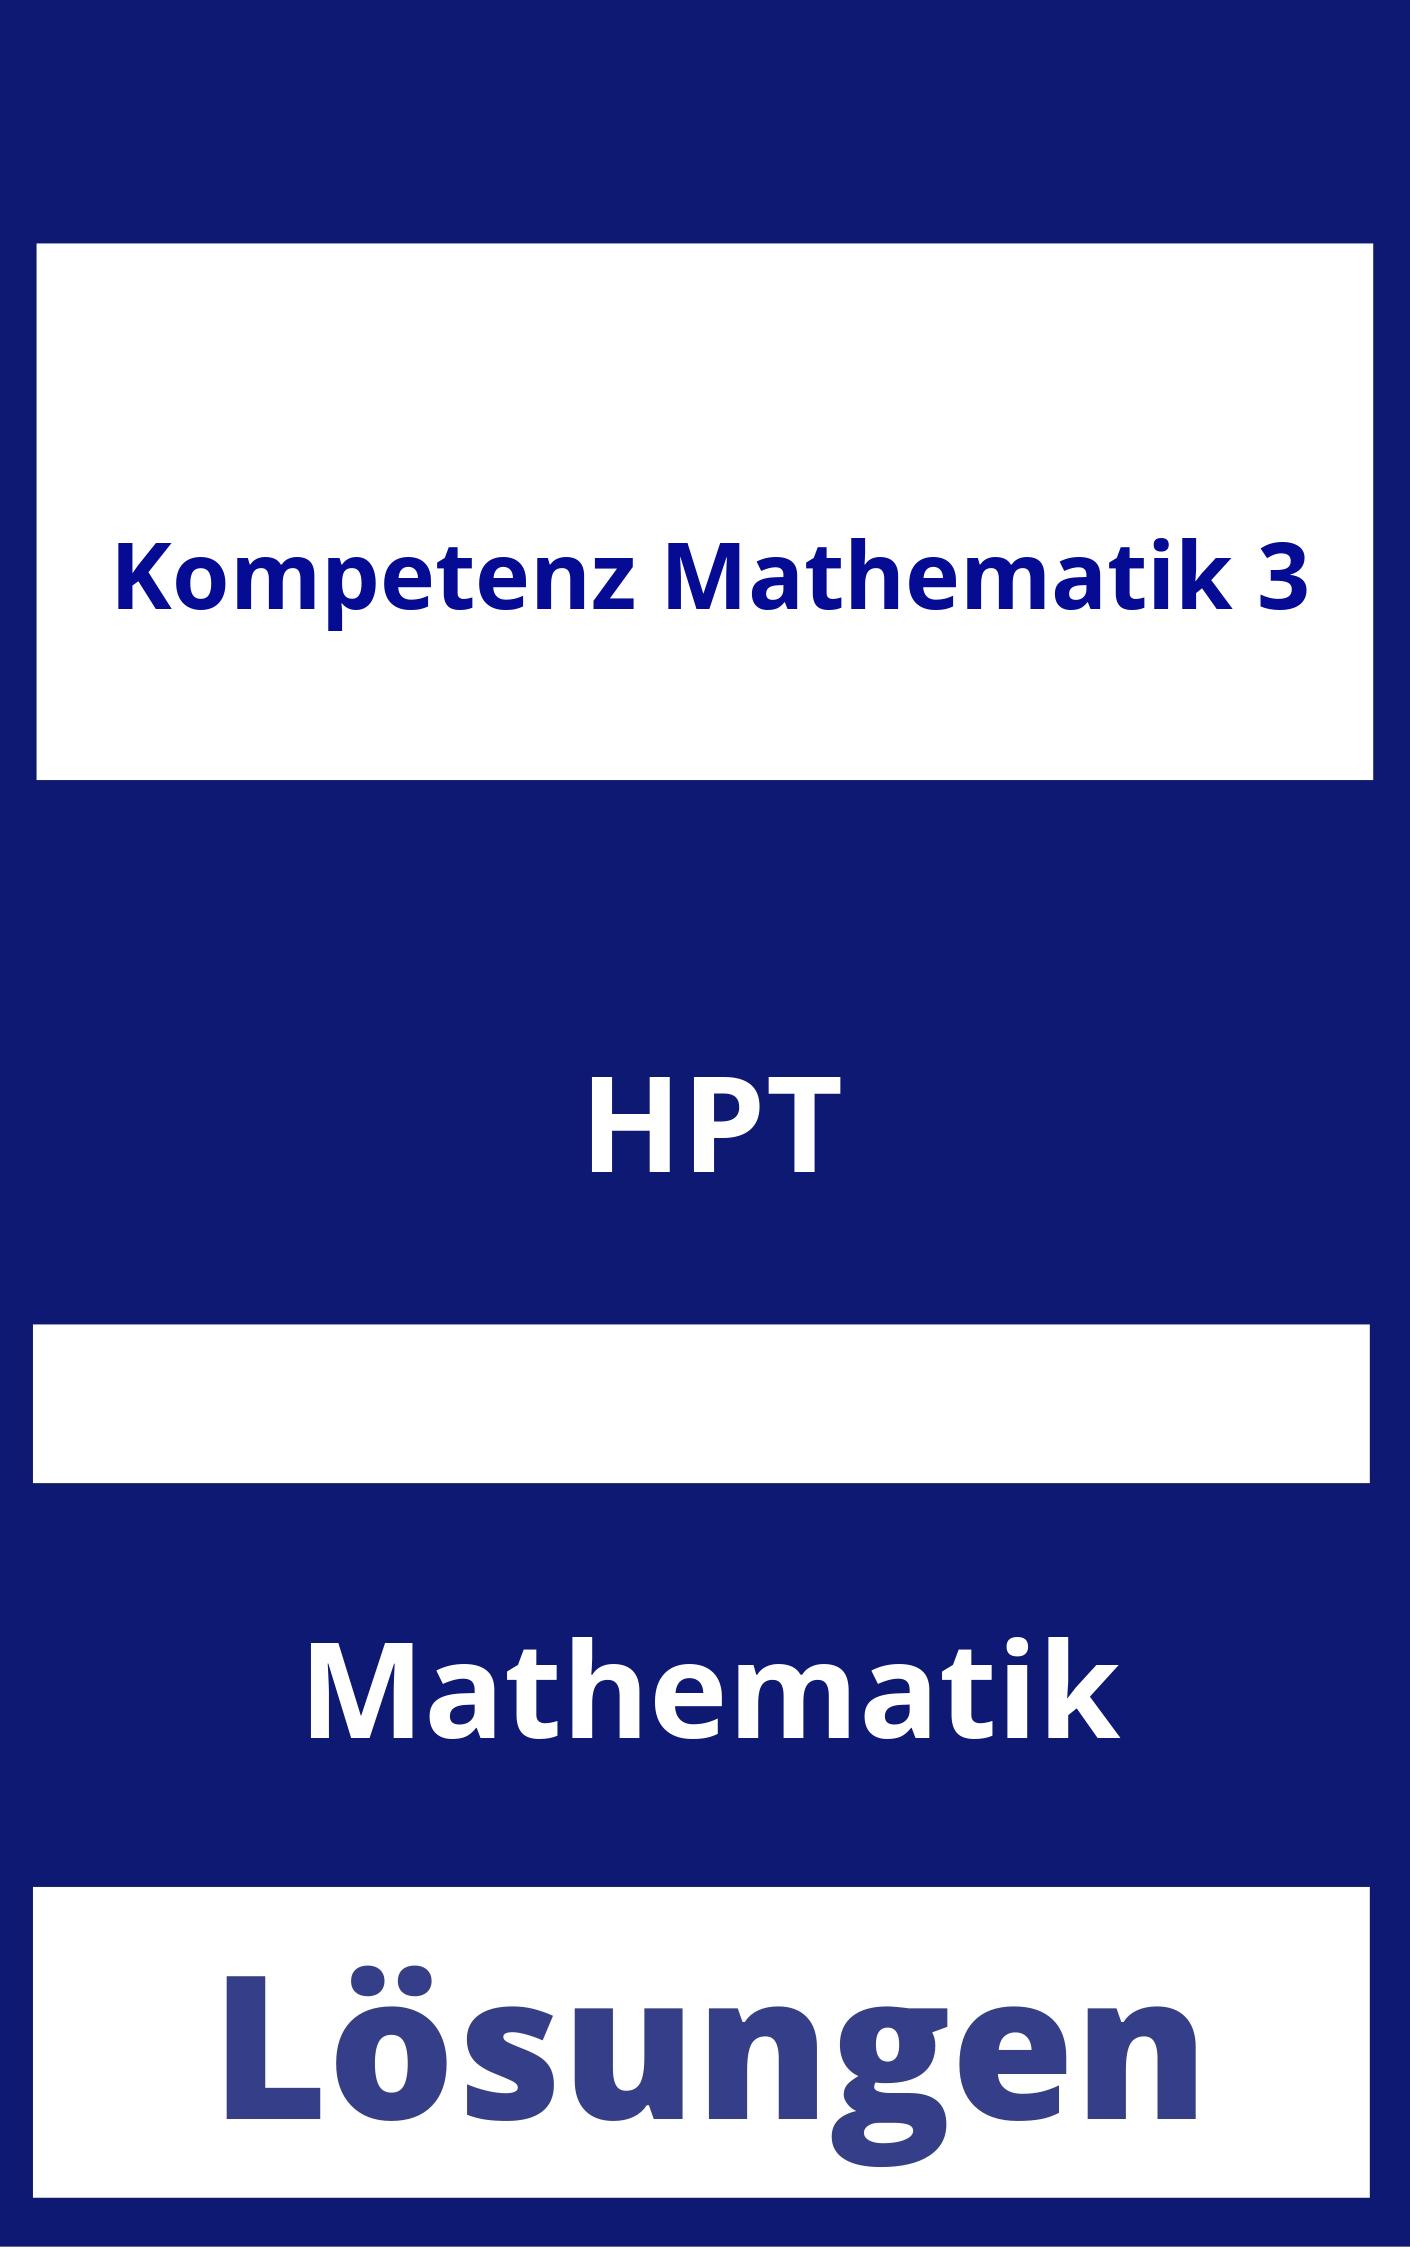 Kompetenz Mathematik 3